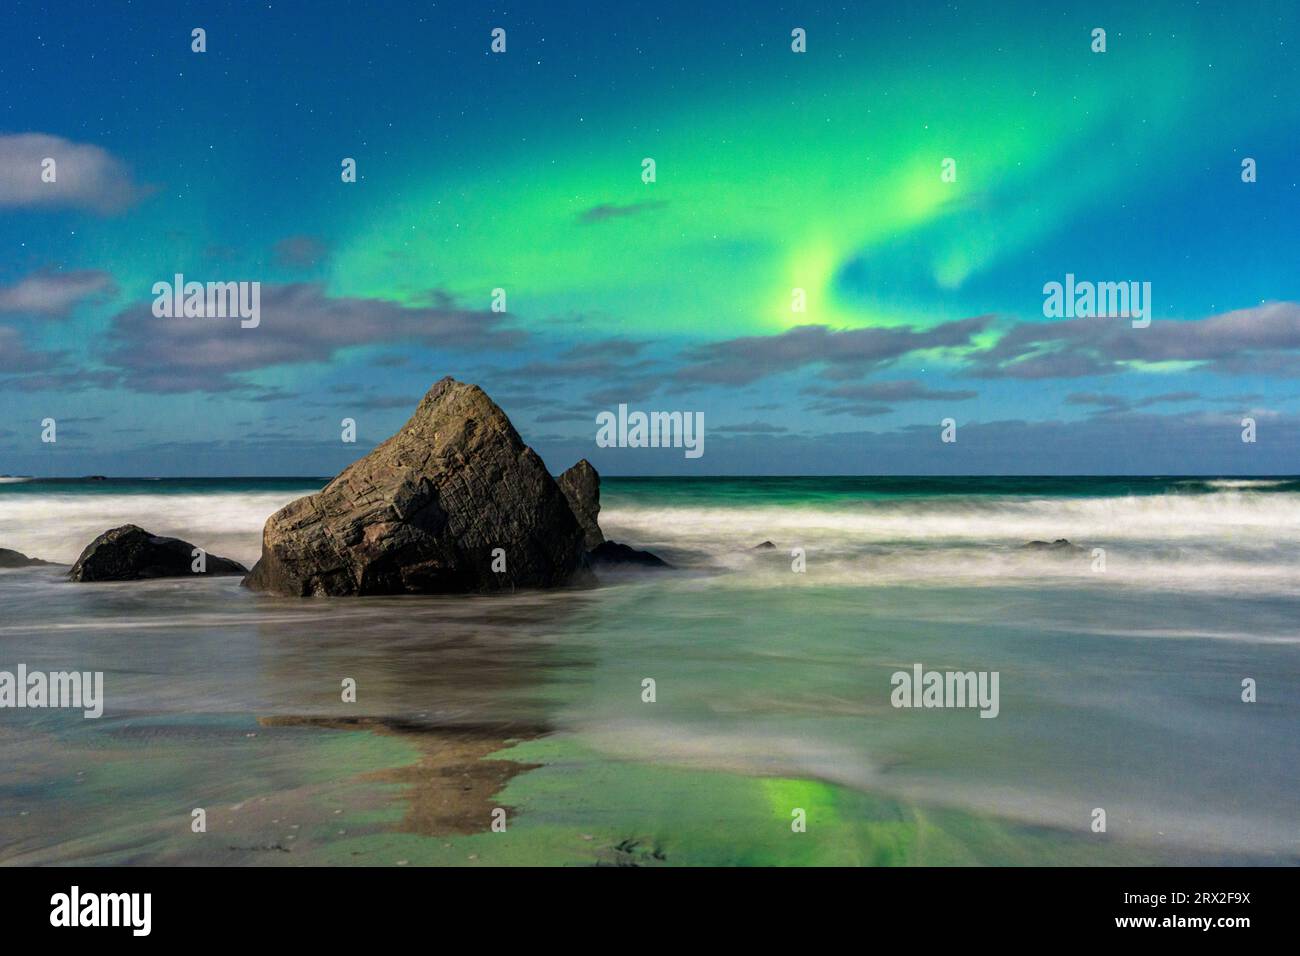 Onde che si infrangono sulle rocce sotto un cielo luminoso con l'aurora boreale, la spiaggia di Skagsanden, Ramberg, le isole Lofoten, Nordland, Norvegia Foto Stock